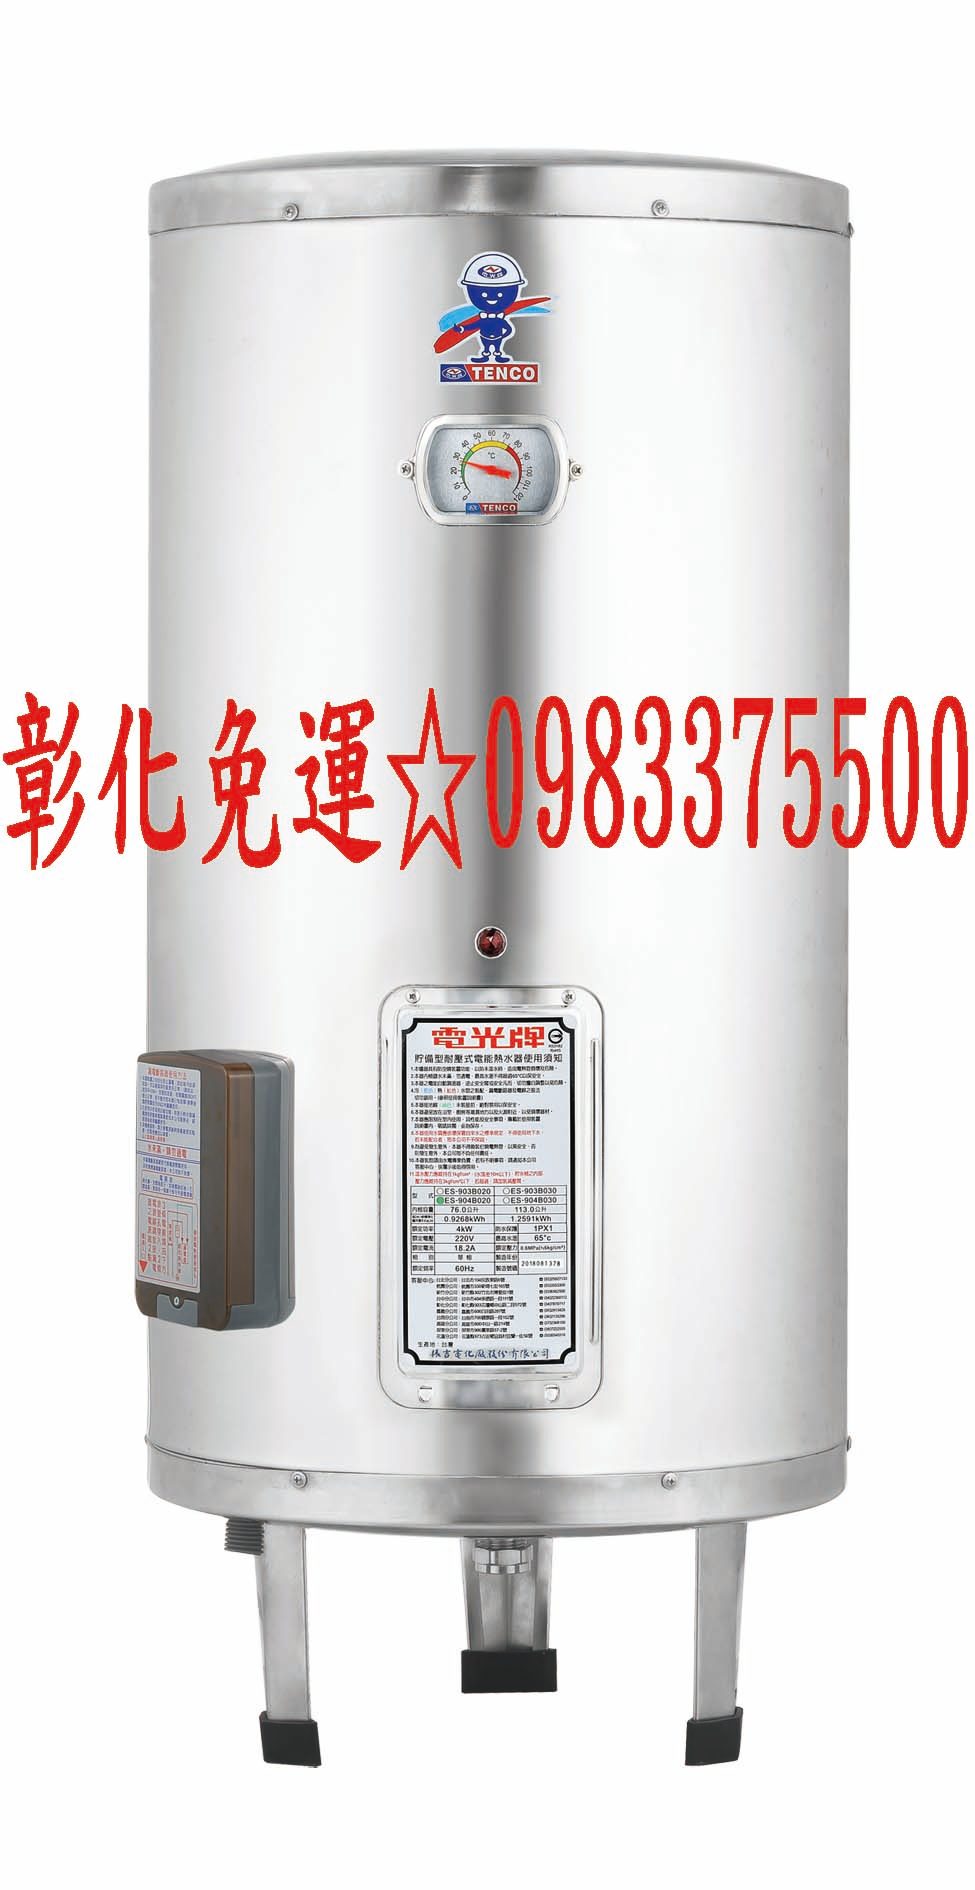 0983375500 ENCO電光牌電能熱水器 3